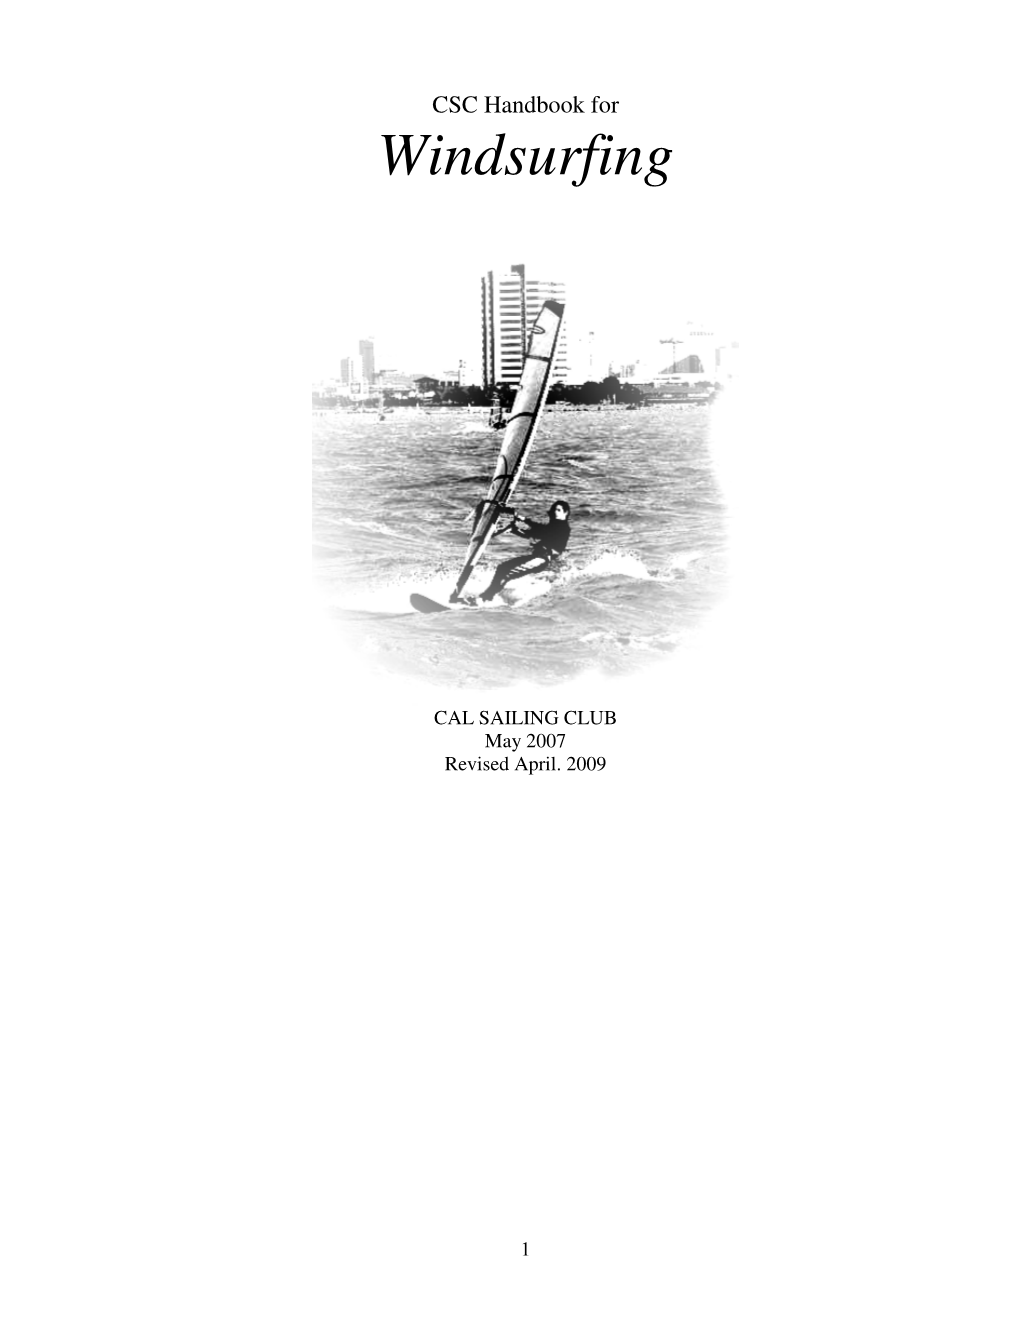 CSC Handbook for Windsurfing